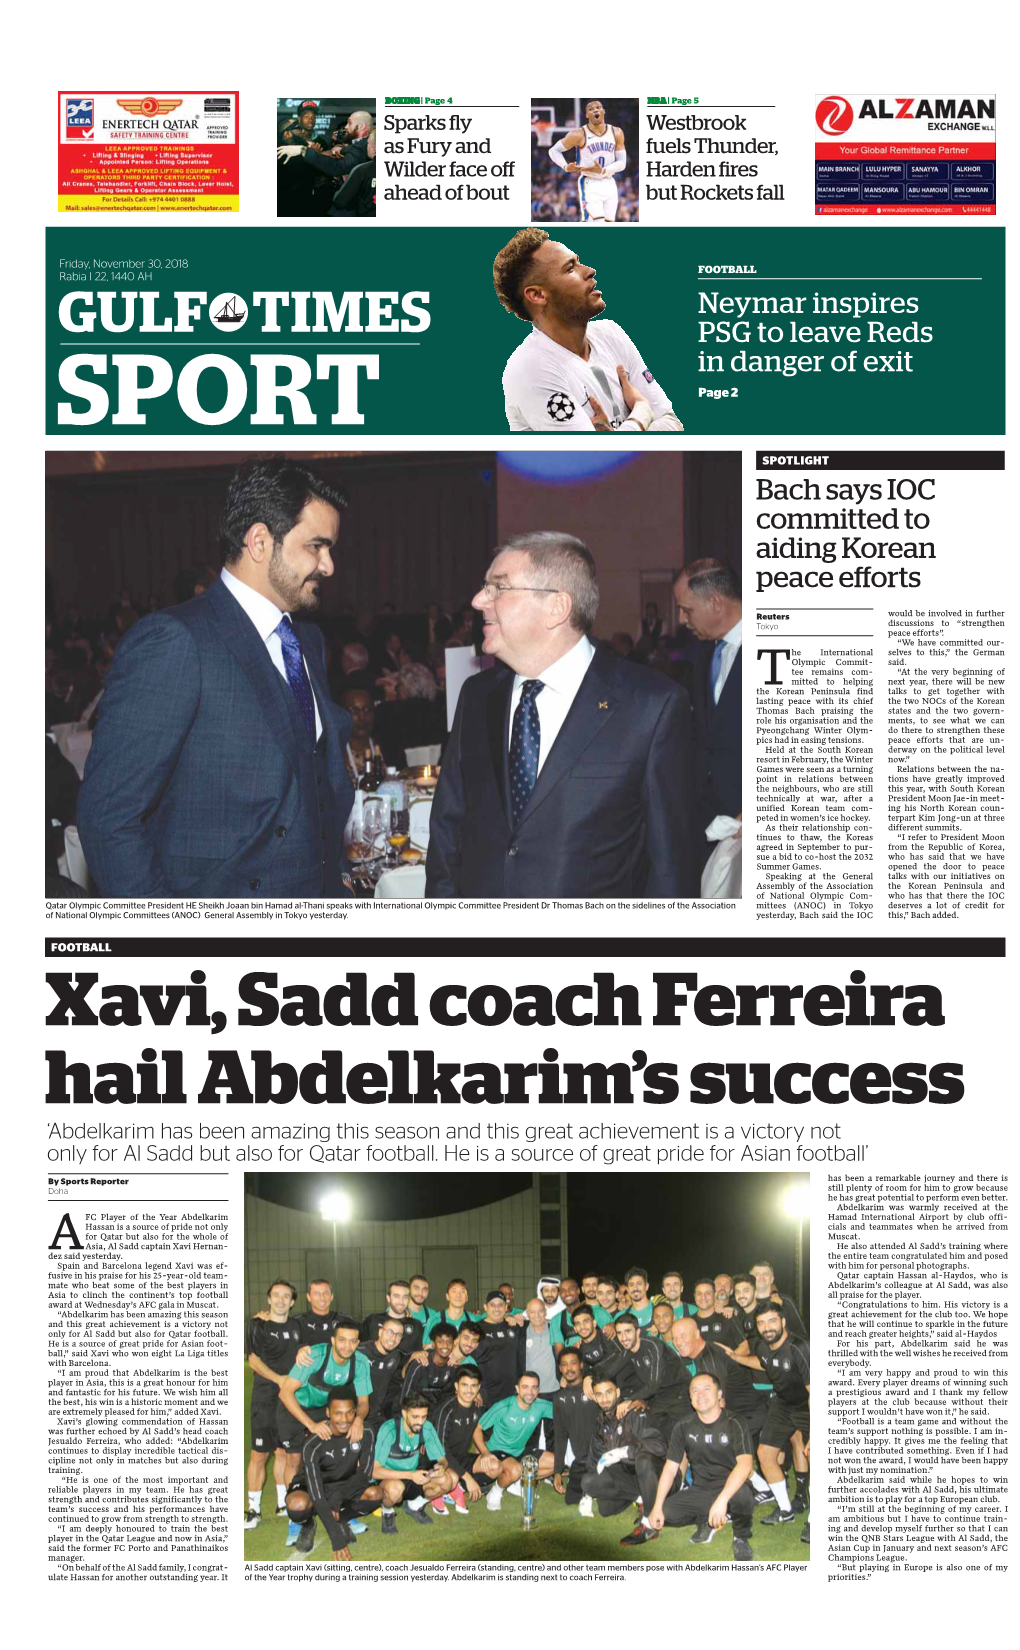 Xavi, Sadd Coach Ferreira Hail Abdelkarim's Success